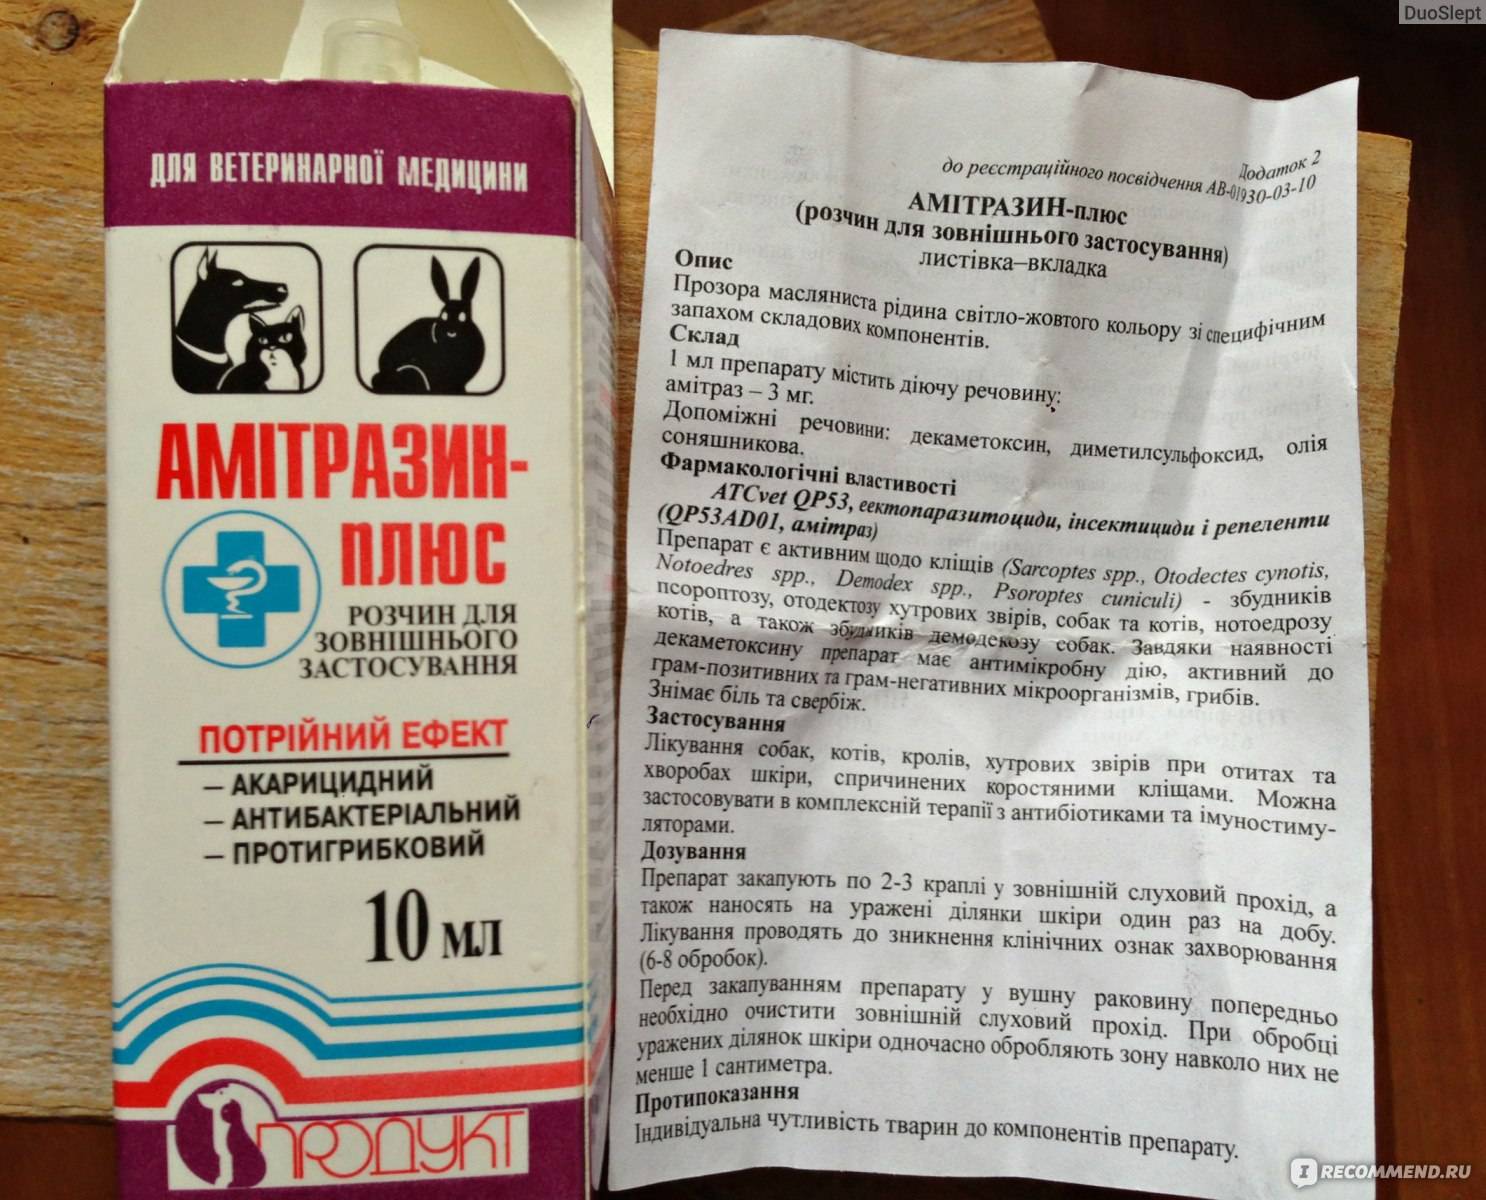 Ветеринарный препарат против паразитов амитразин: инструкция по применению - вет-препараты